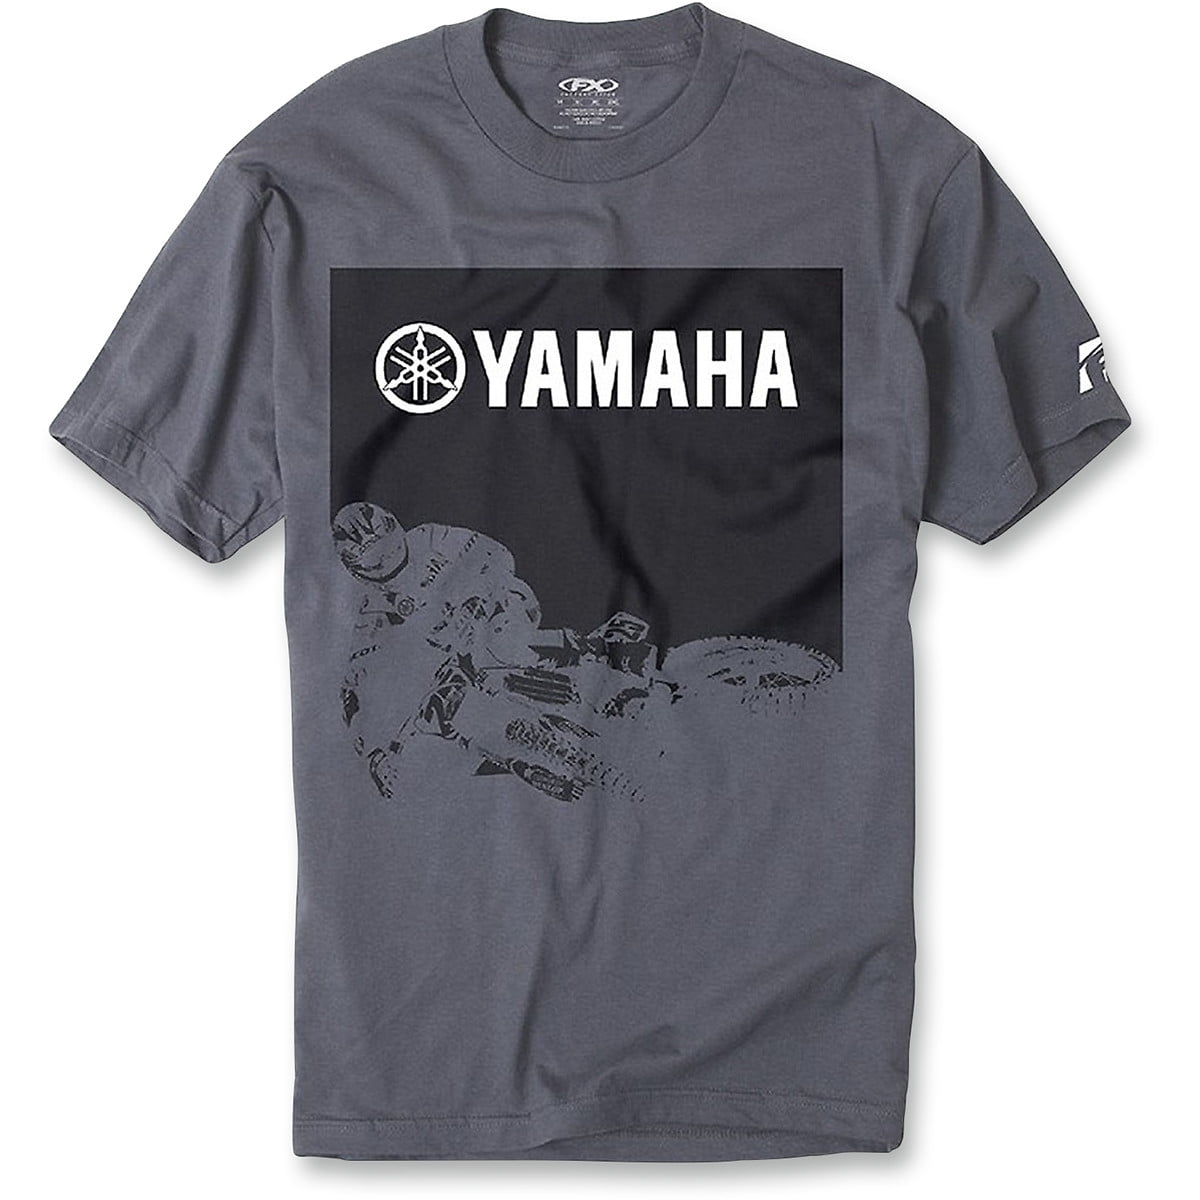 Yamaha Moisture Wicking Pro Fishing boating Long Sleeve Tee Shirt Size Large 